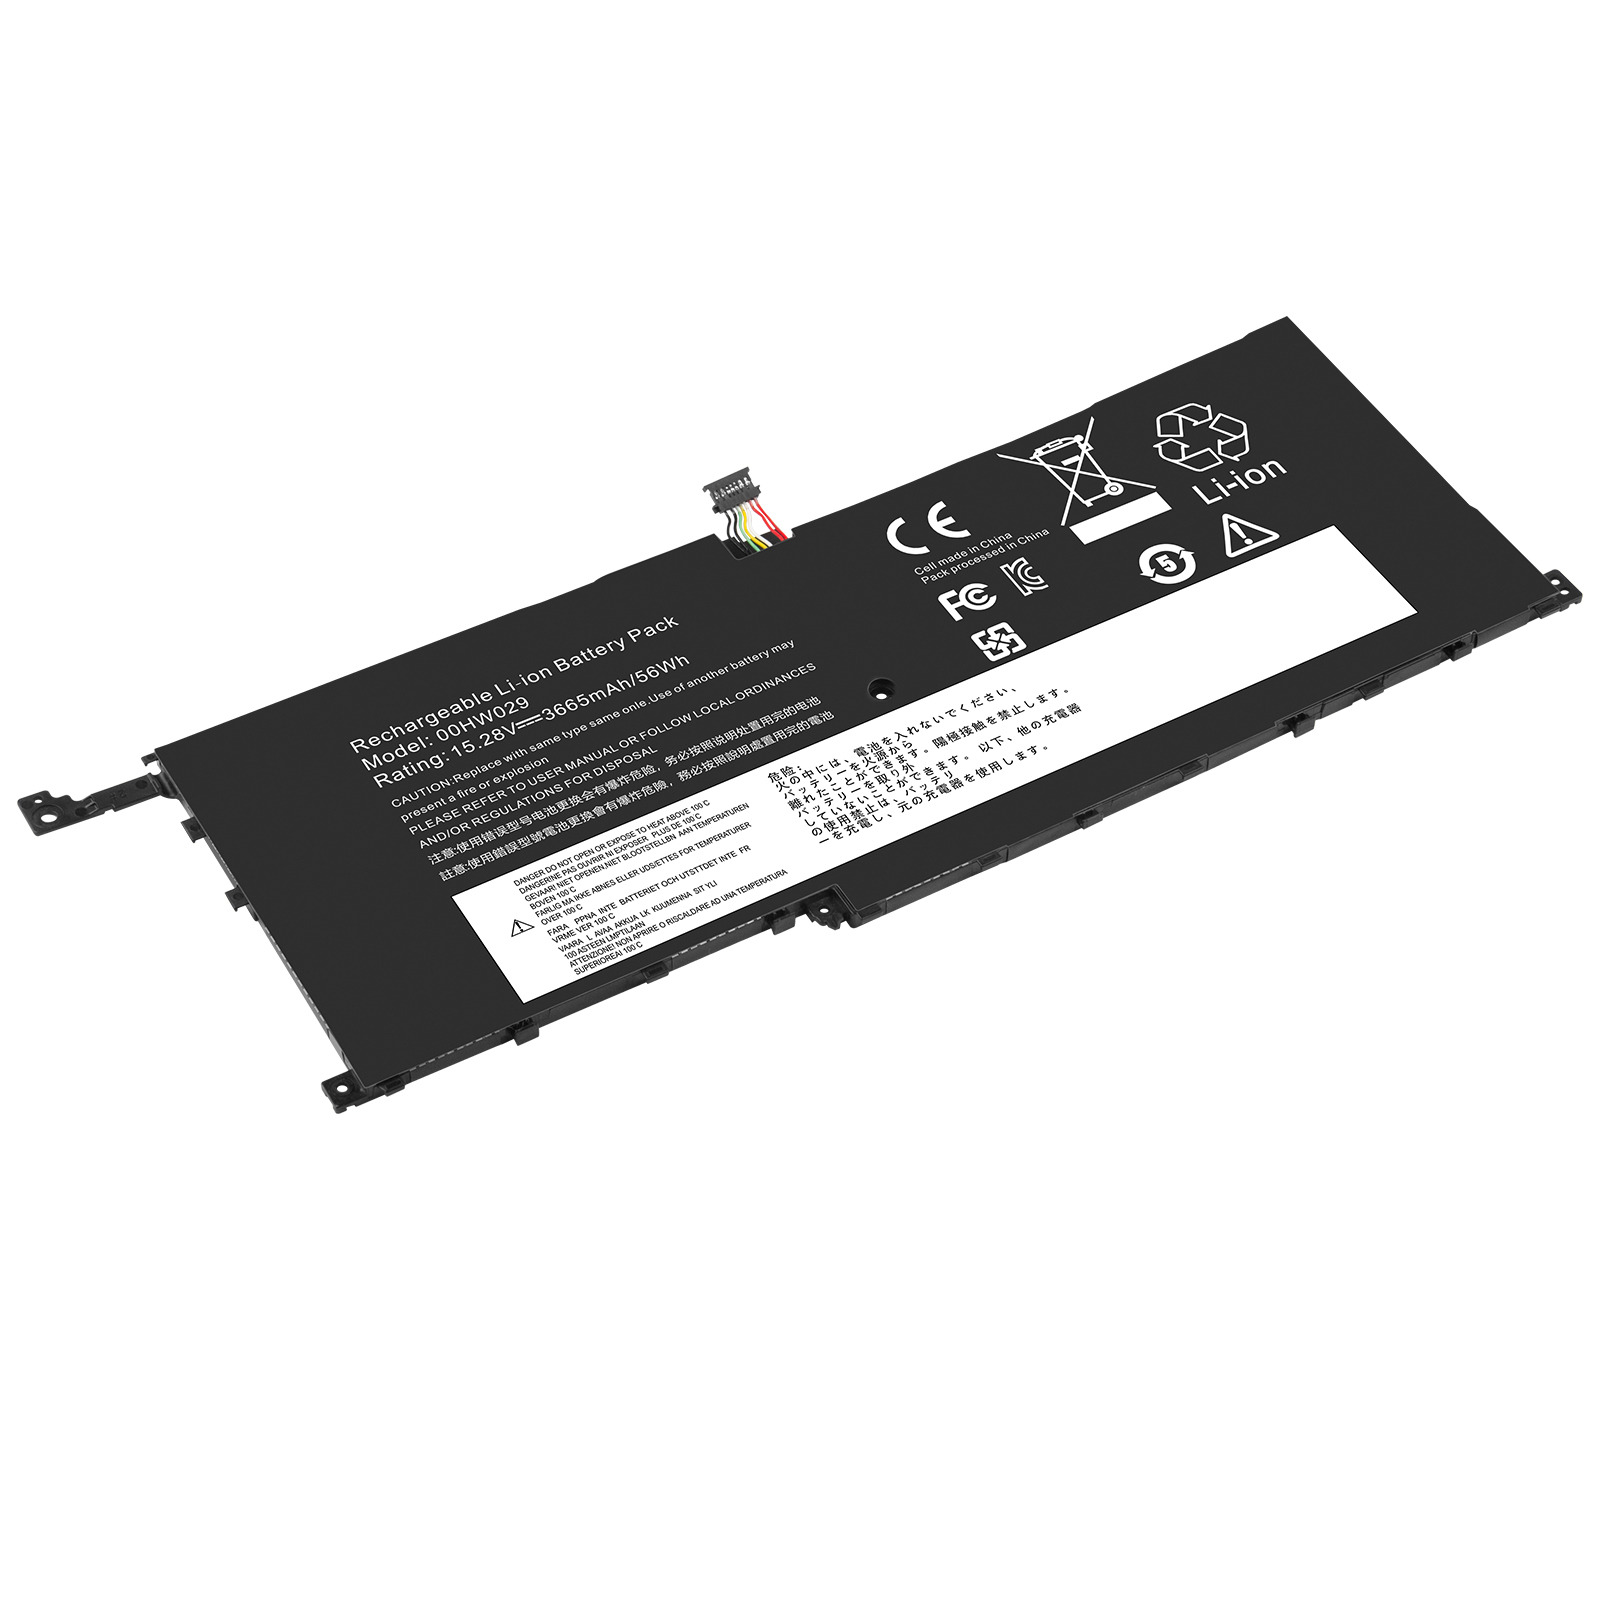 Battery For Lenovo ThinkPad X1 Yoga 1st 2nd Gen 01AV438 01AV439 01AV409 01AV458